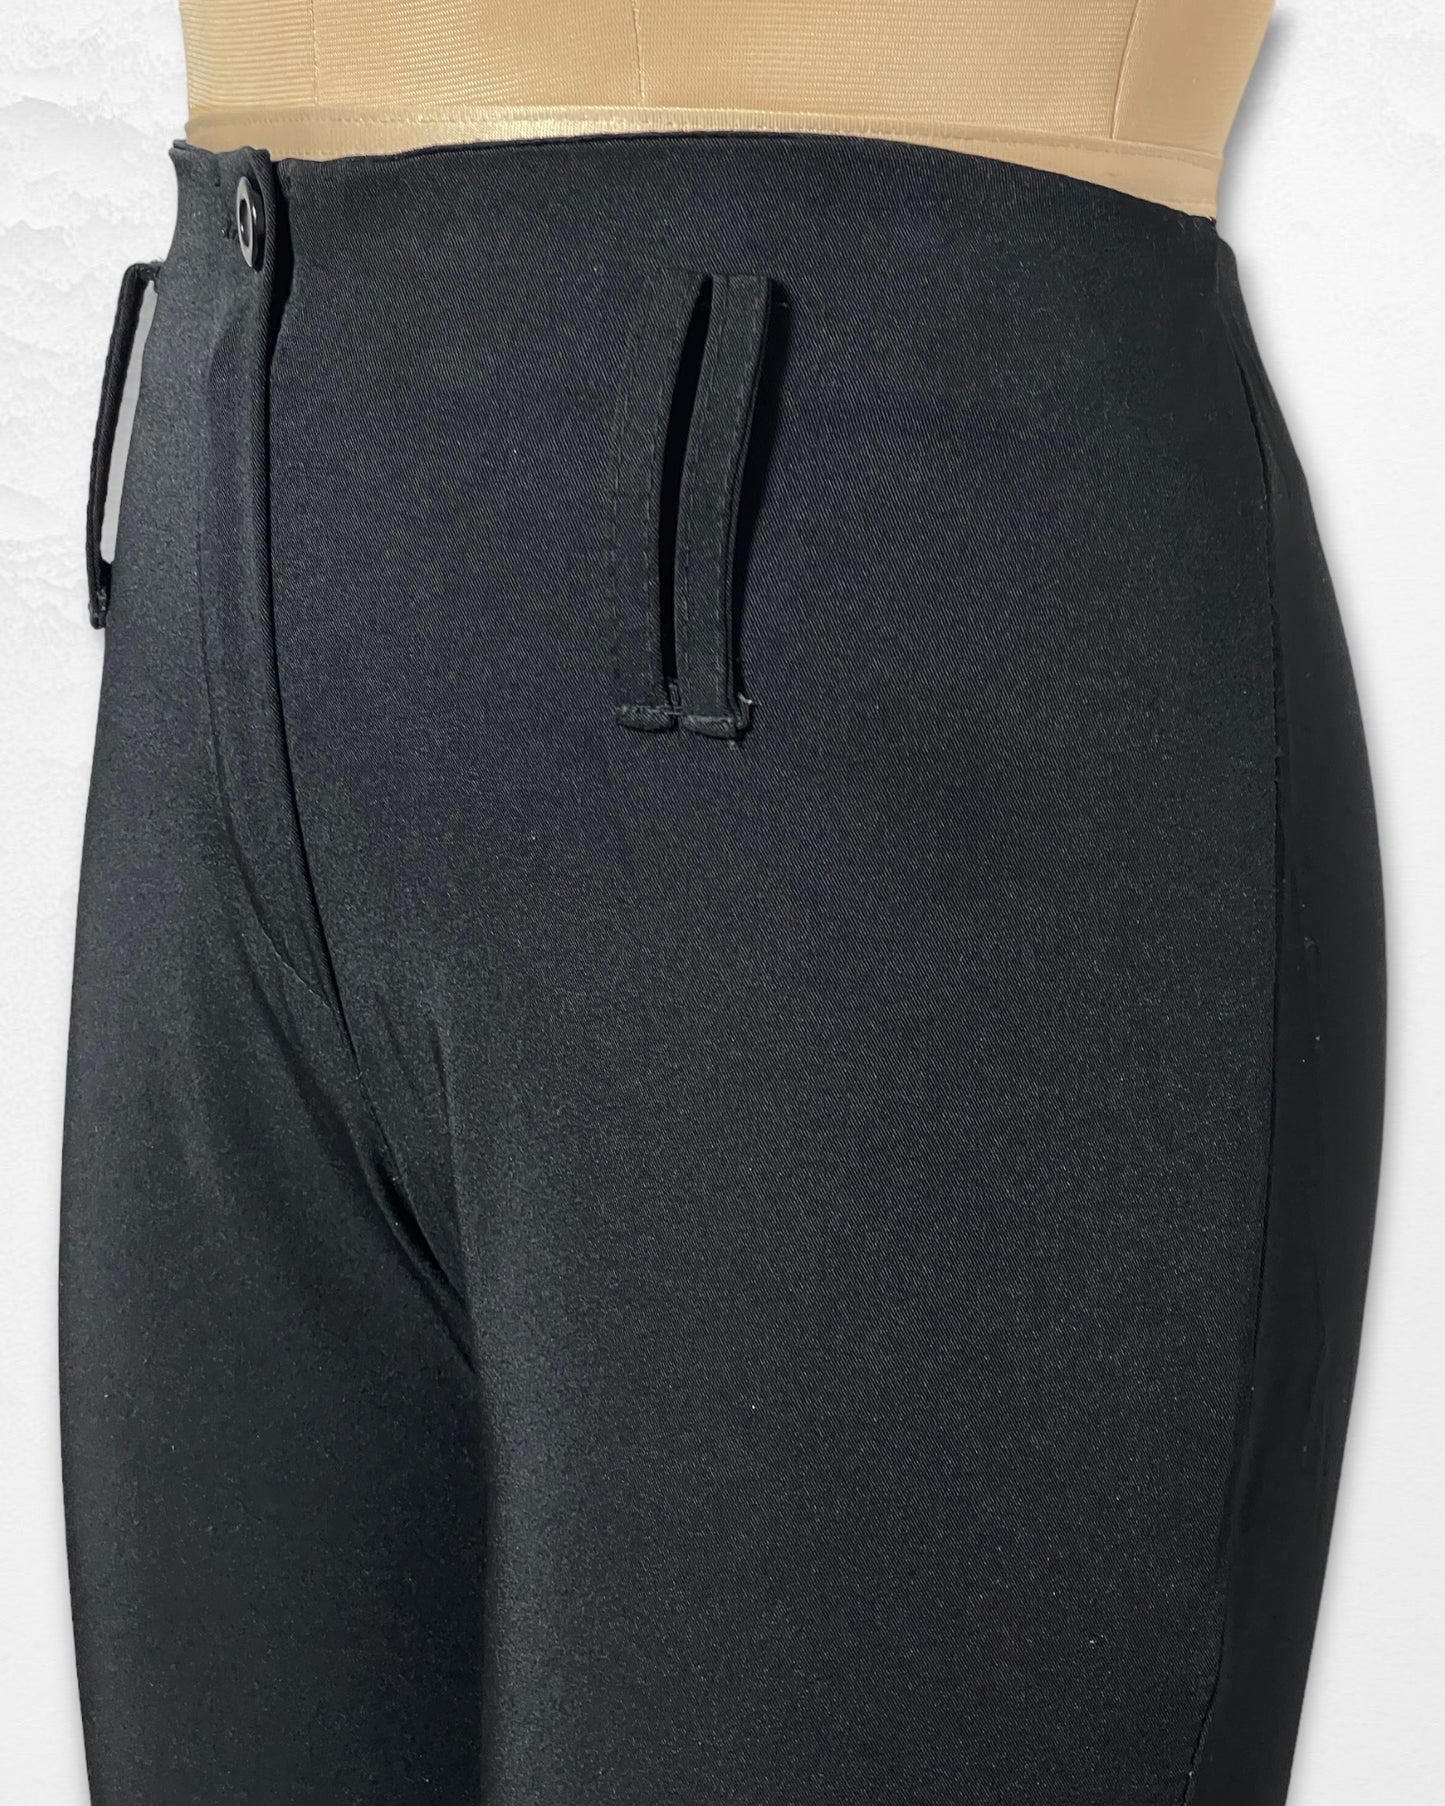 Women's Trouser 2706